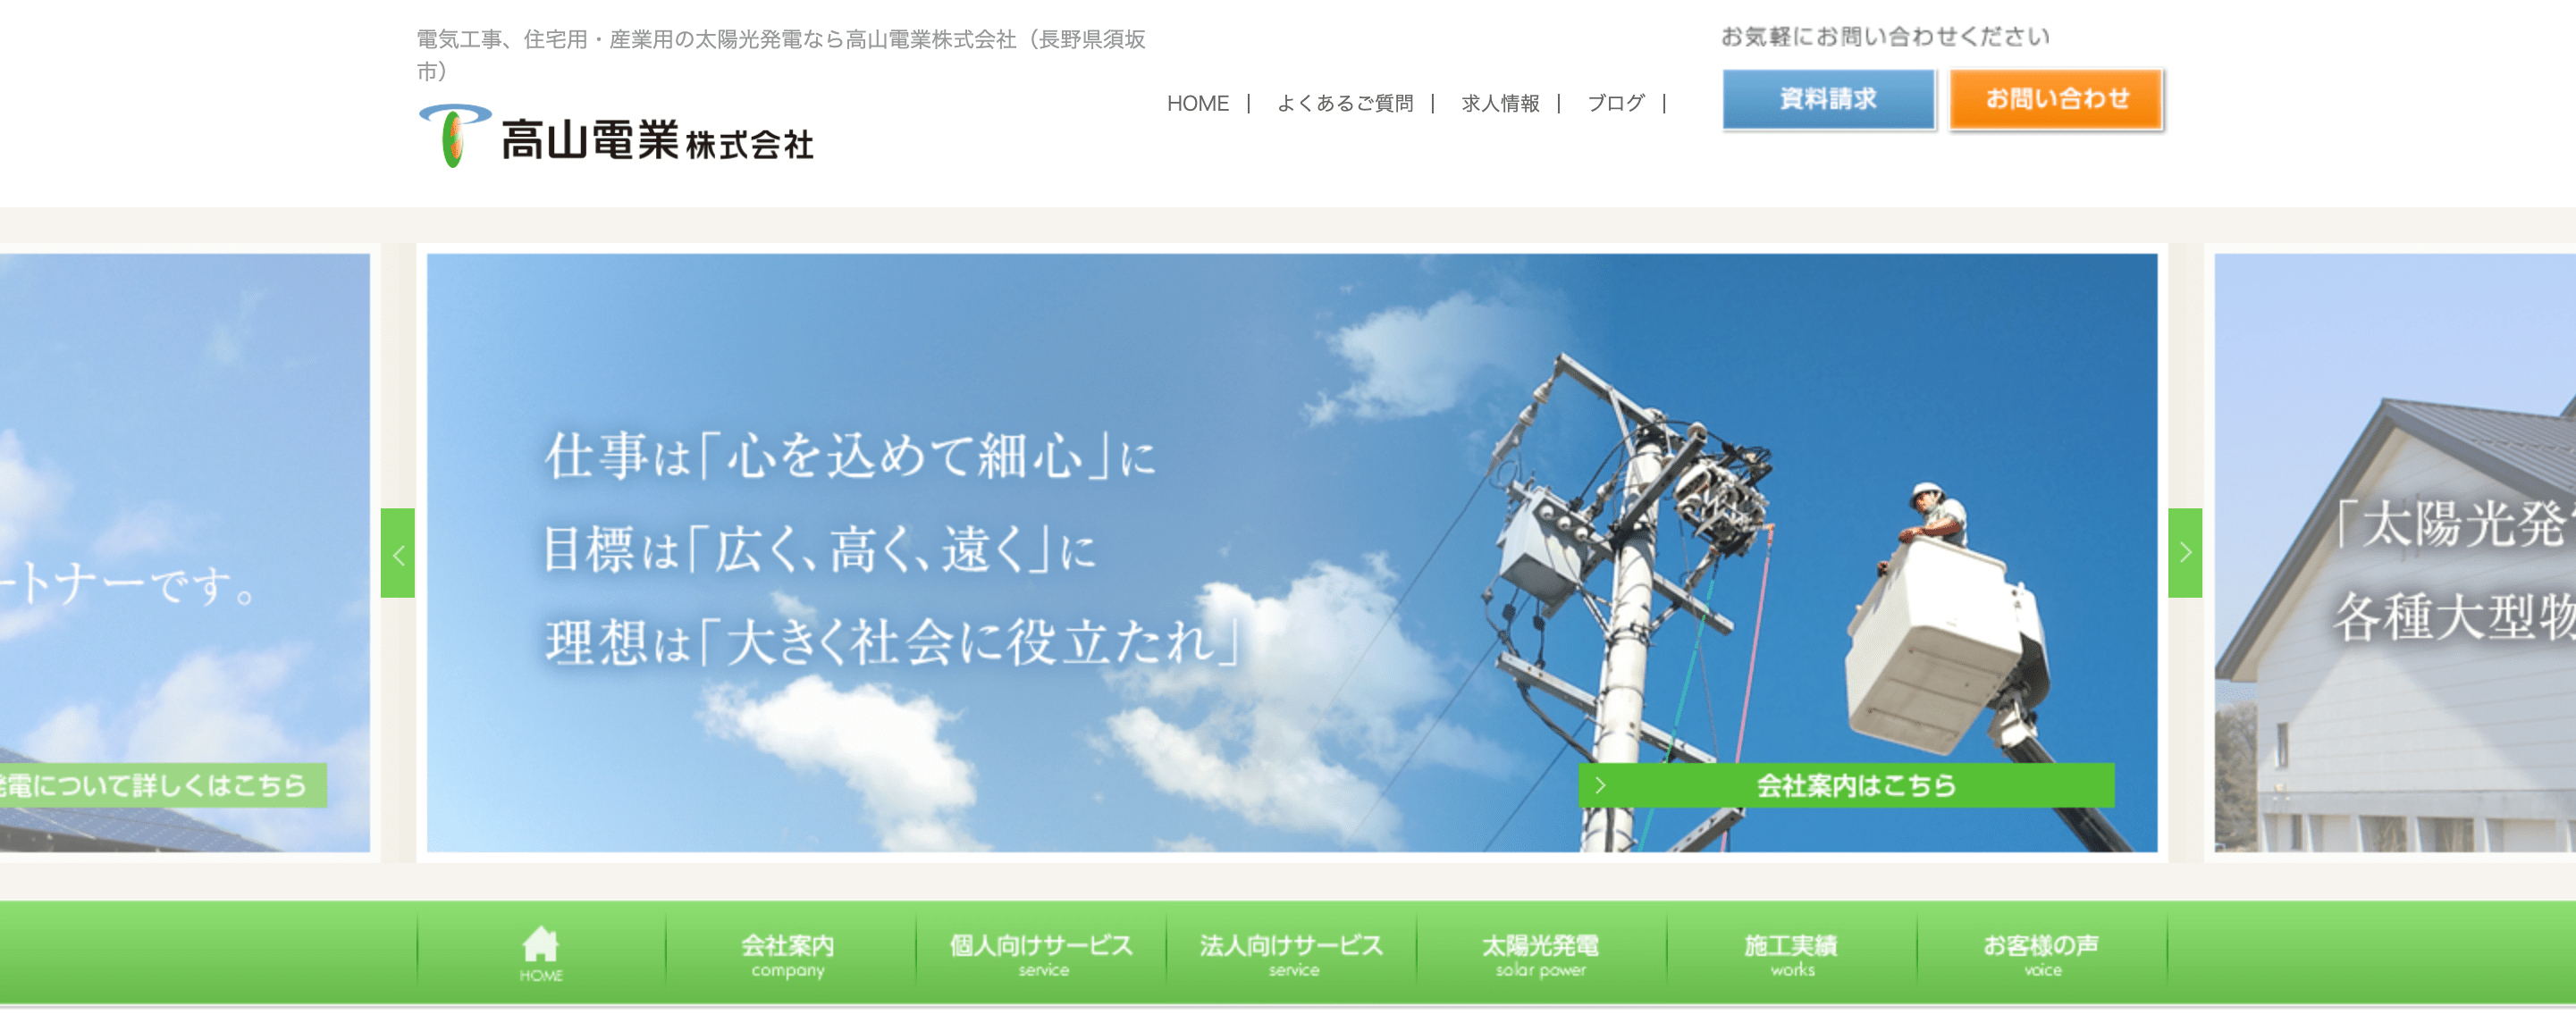 高山電業株式会社の画像